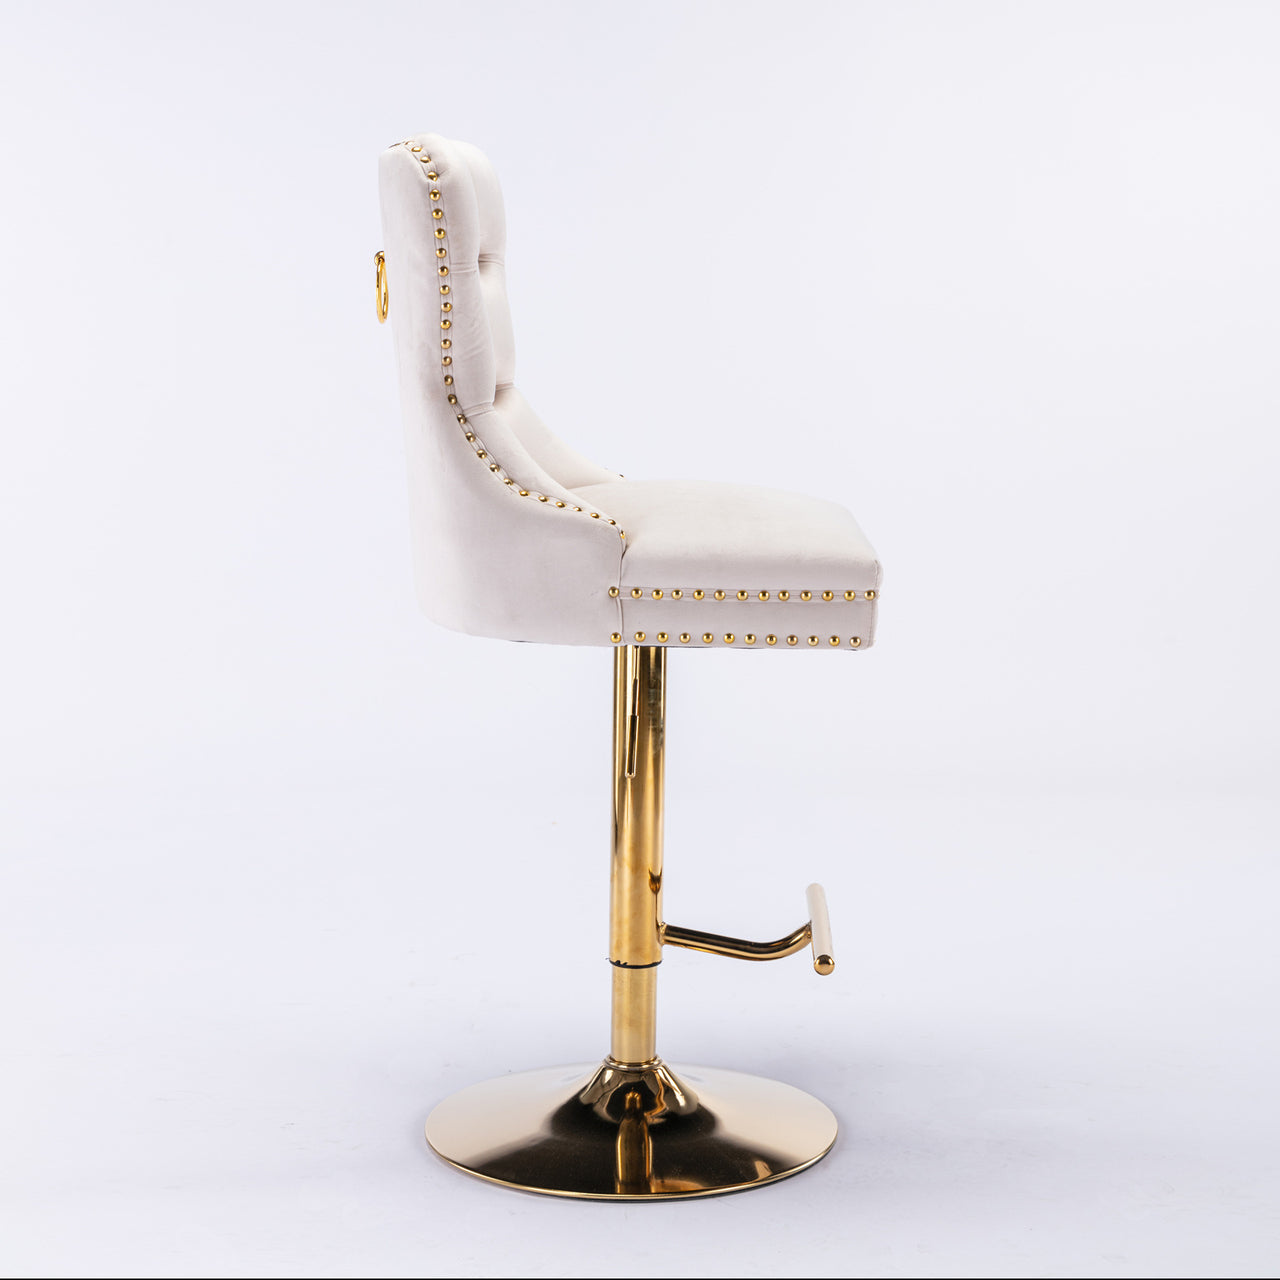 A&A Furniture Thick Golden swivel velvet barstools adjusatble